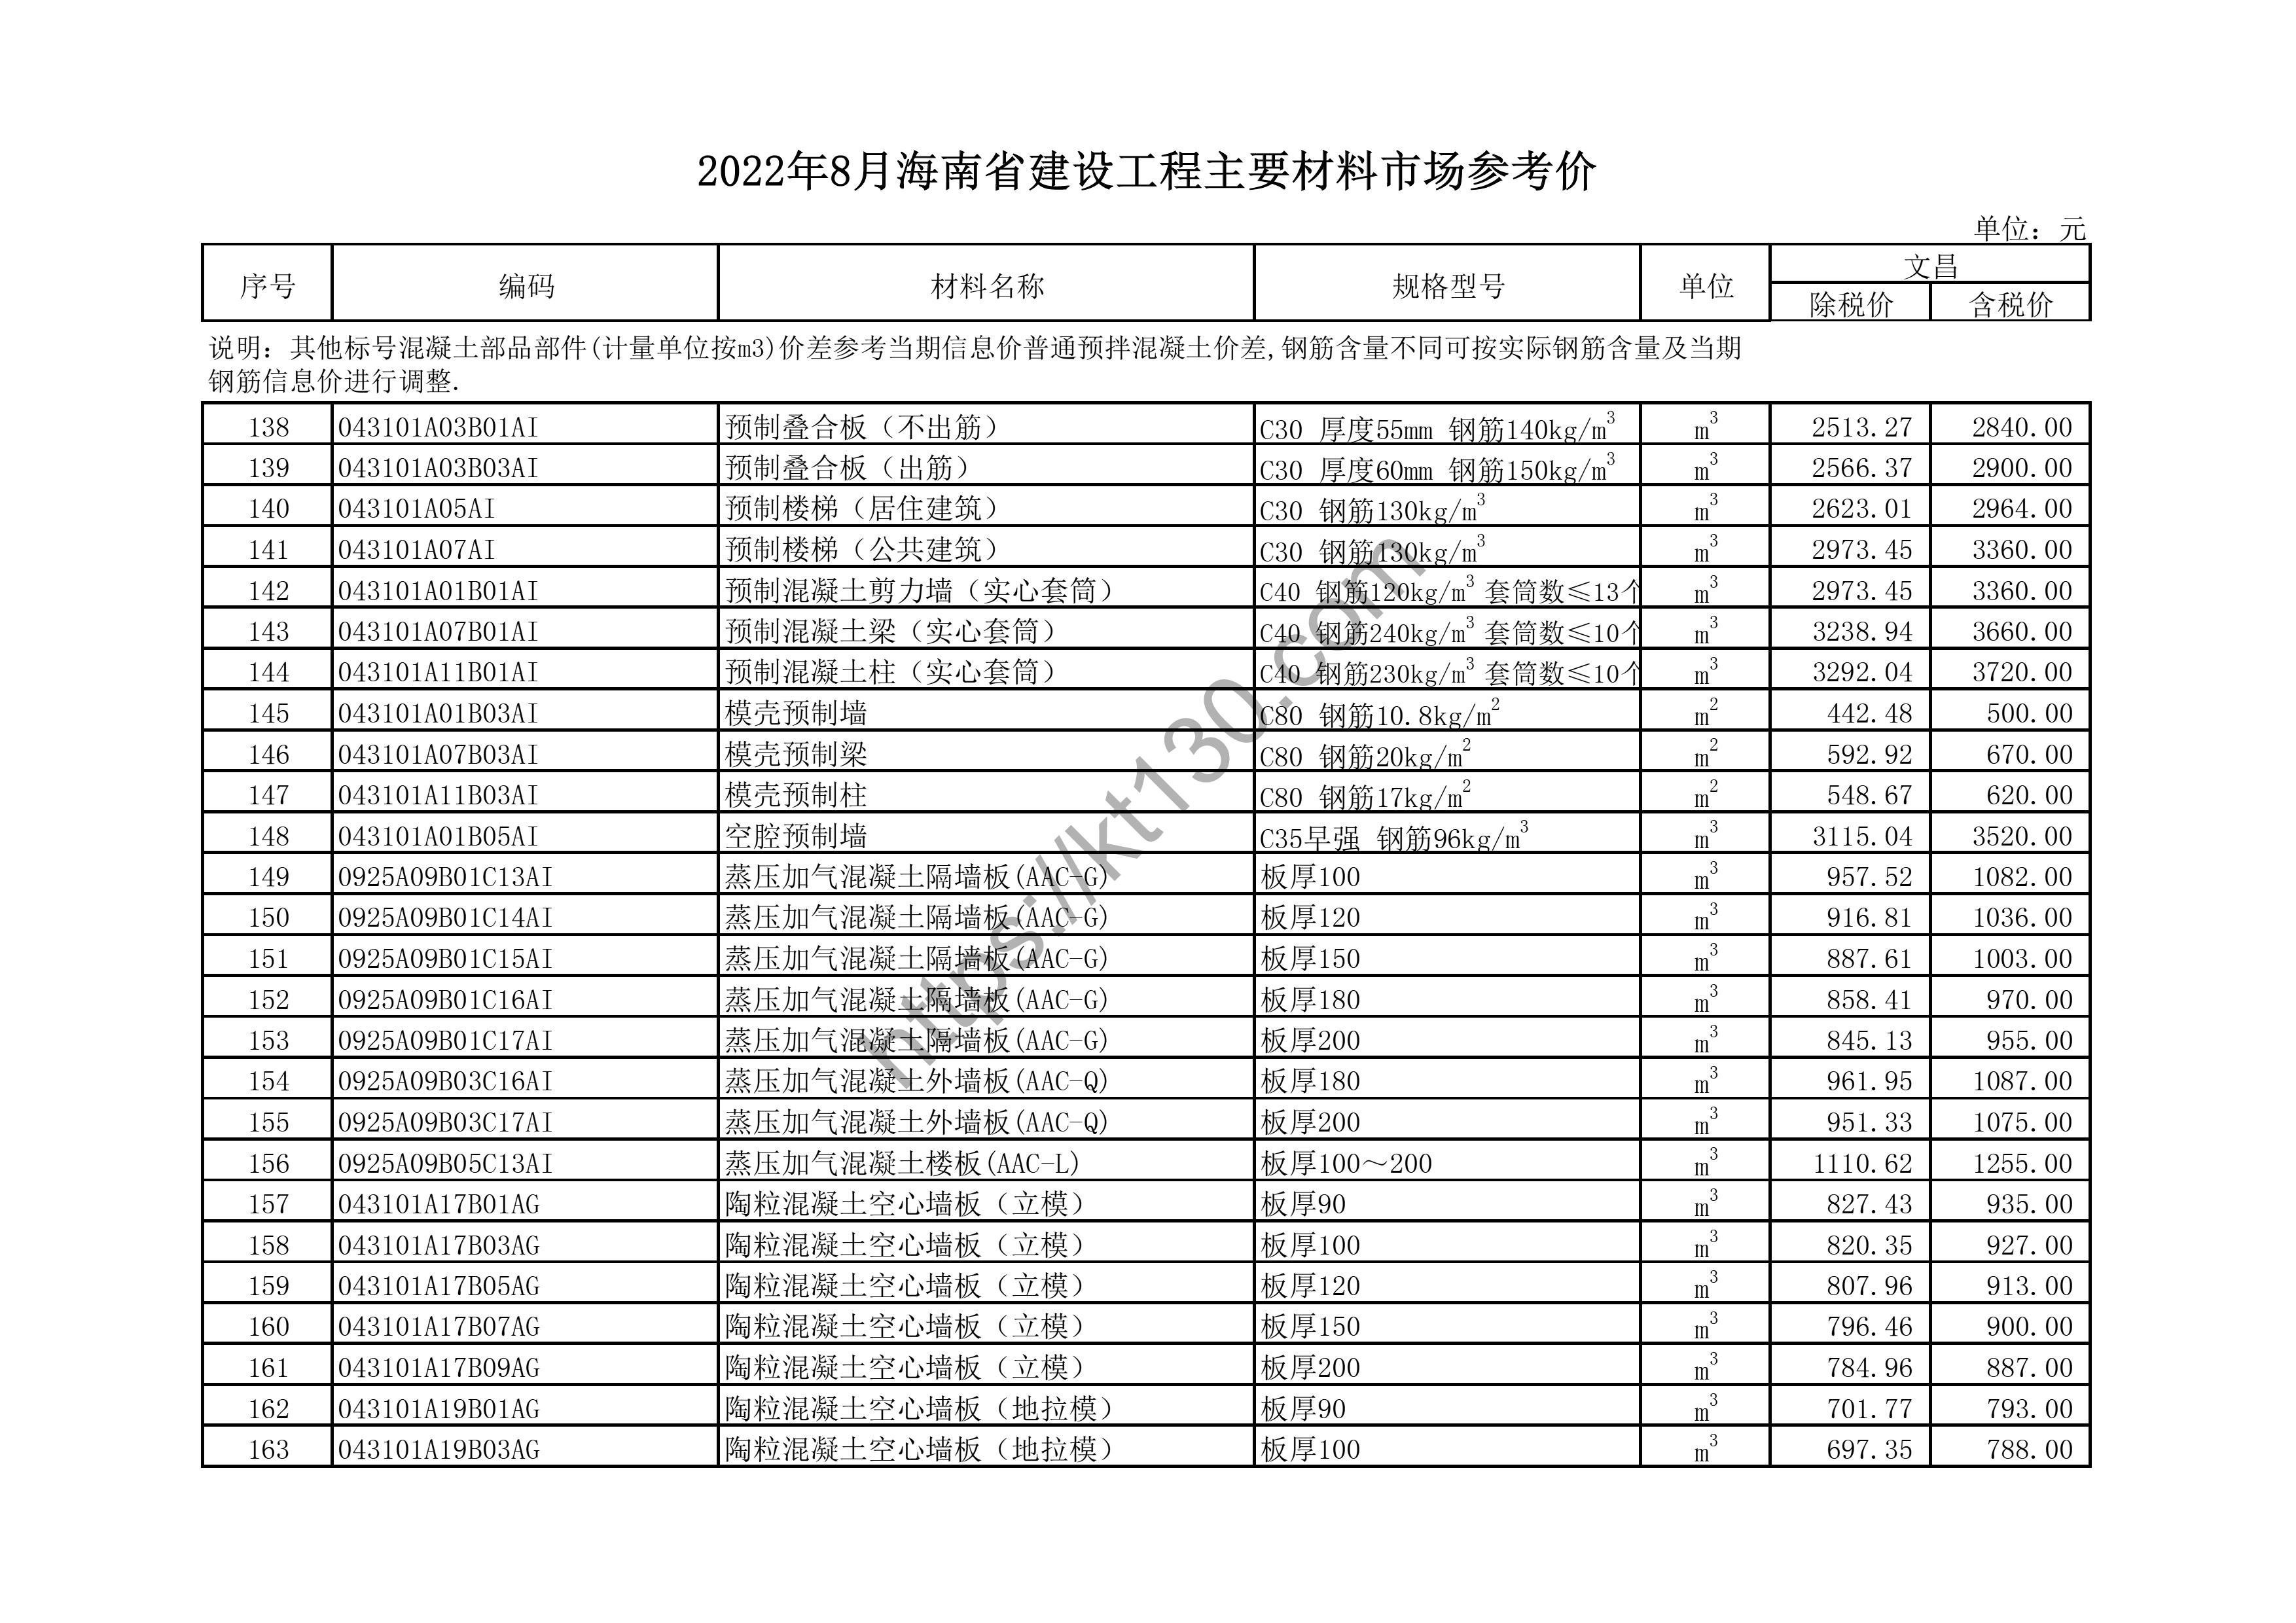 海南省2022年8月建筑材料价_PPR管材_44620